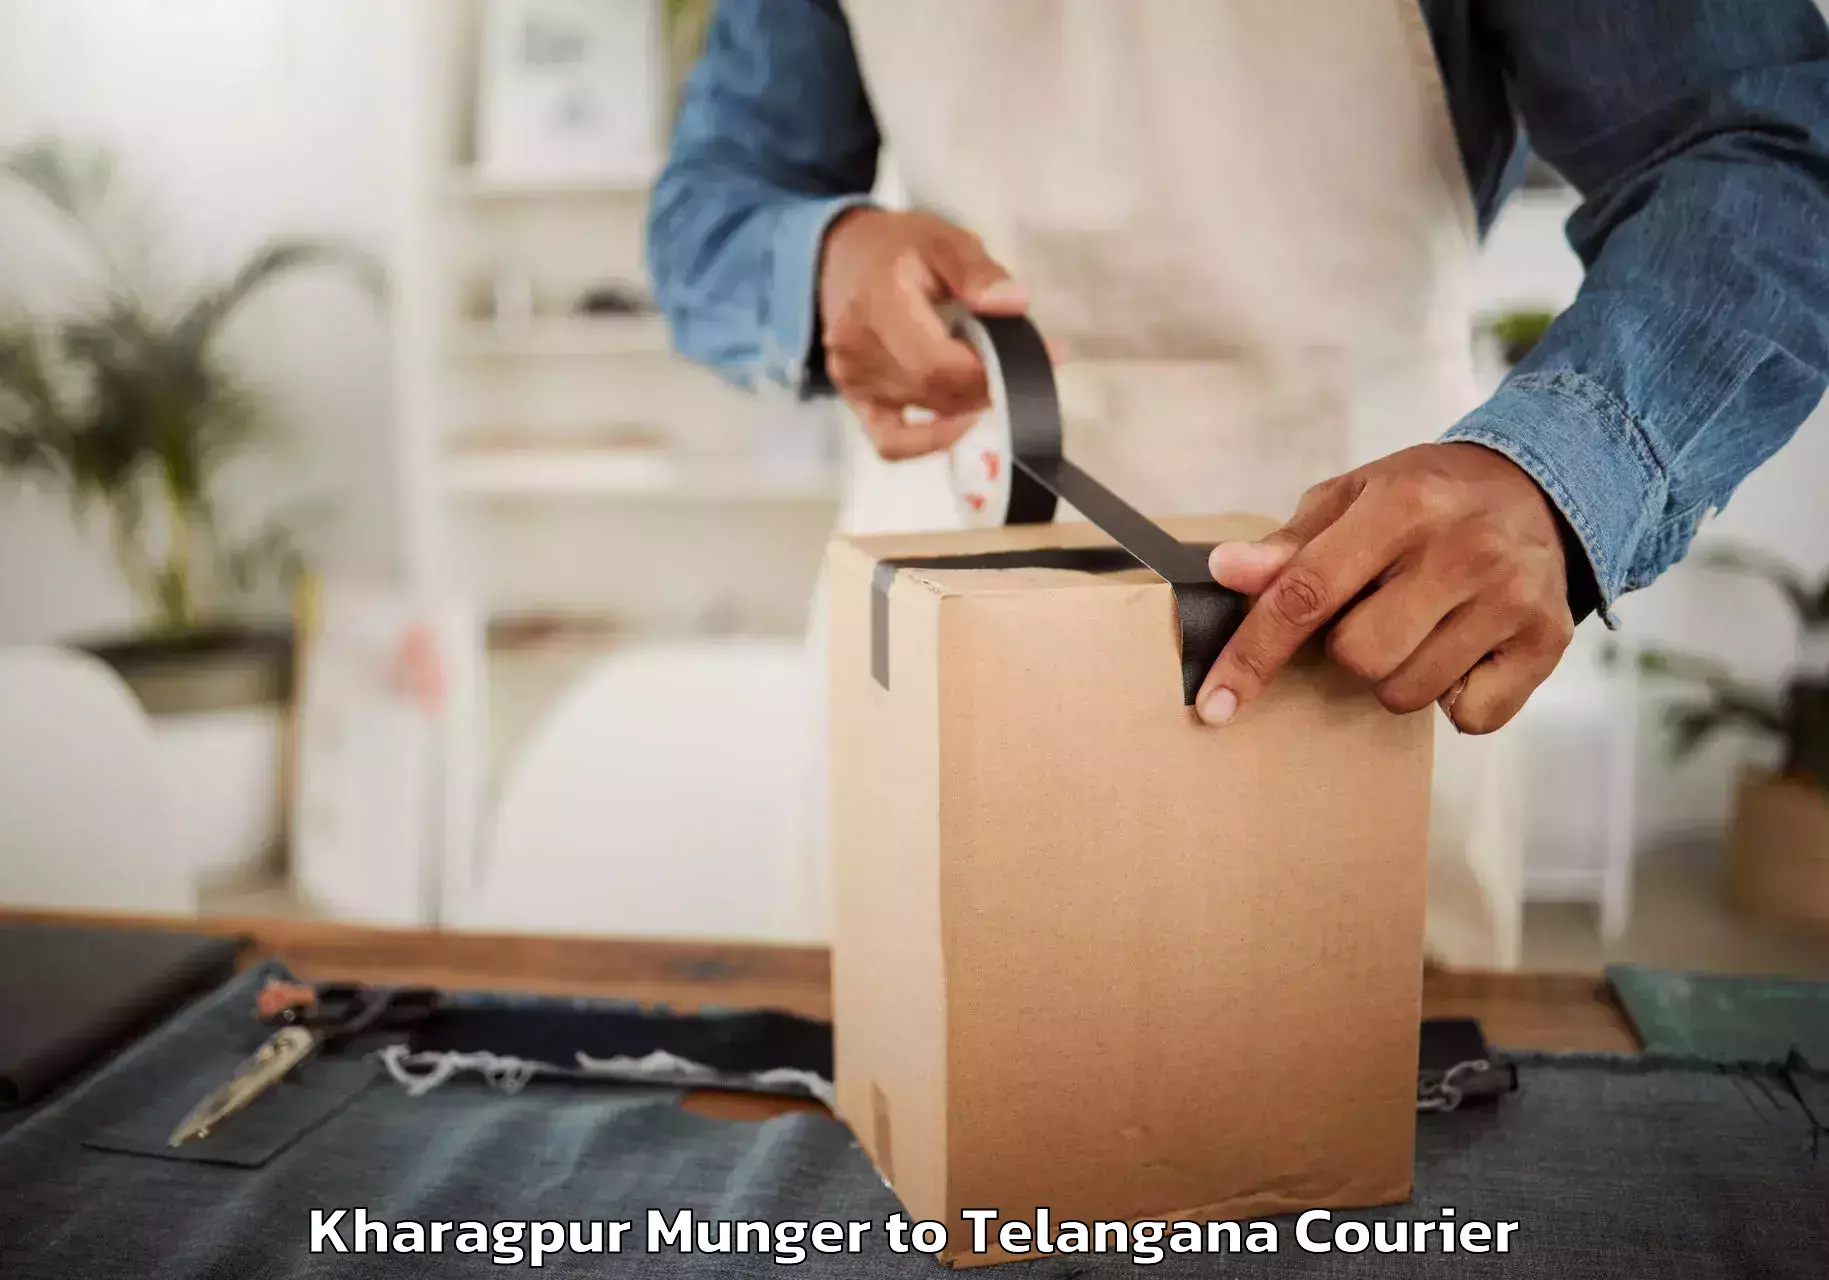 Furniture moving experts Kharagpur Munger to Eligedu